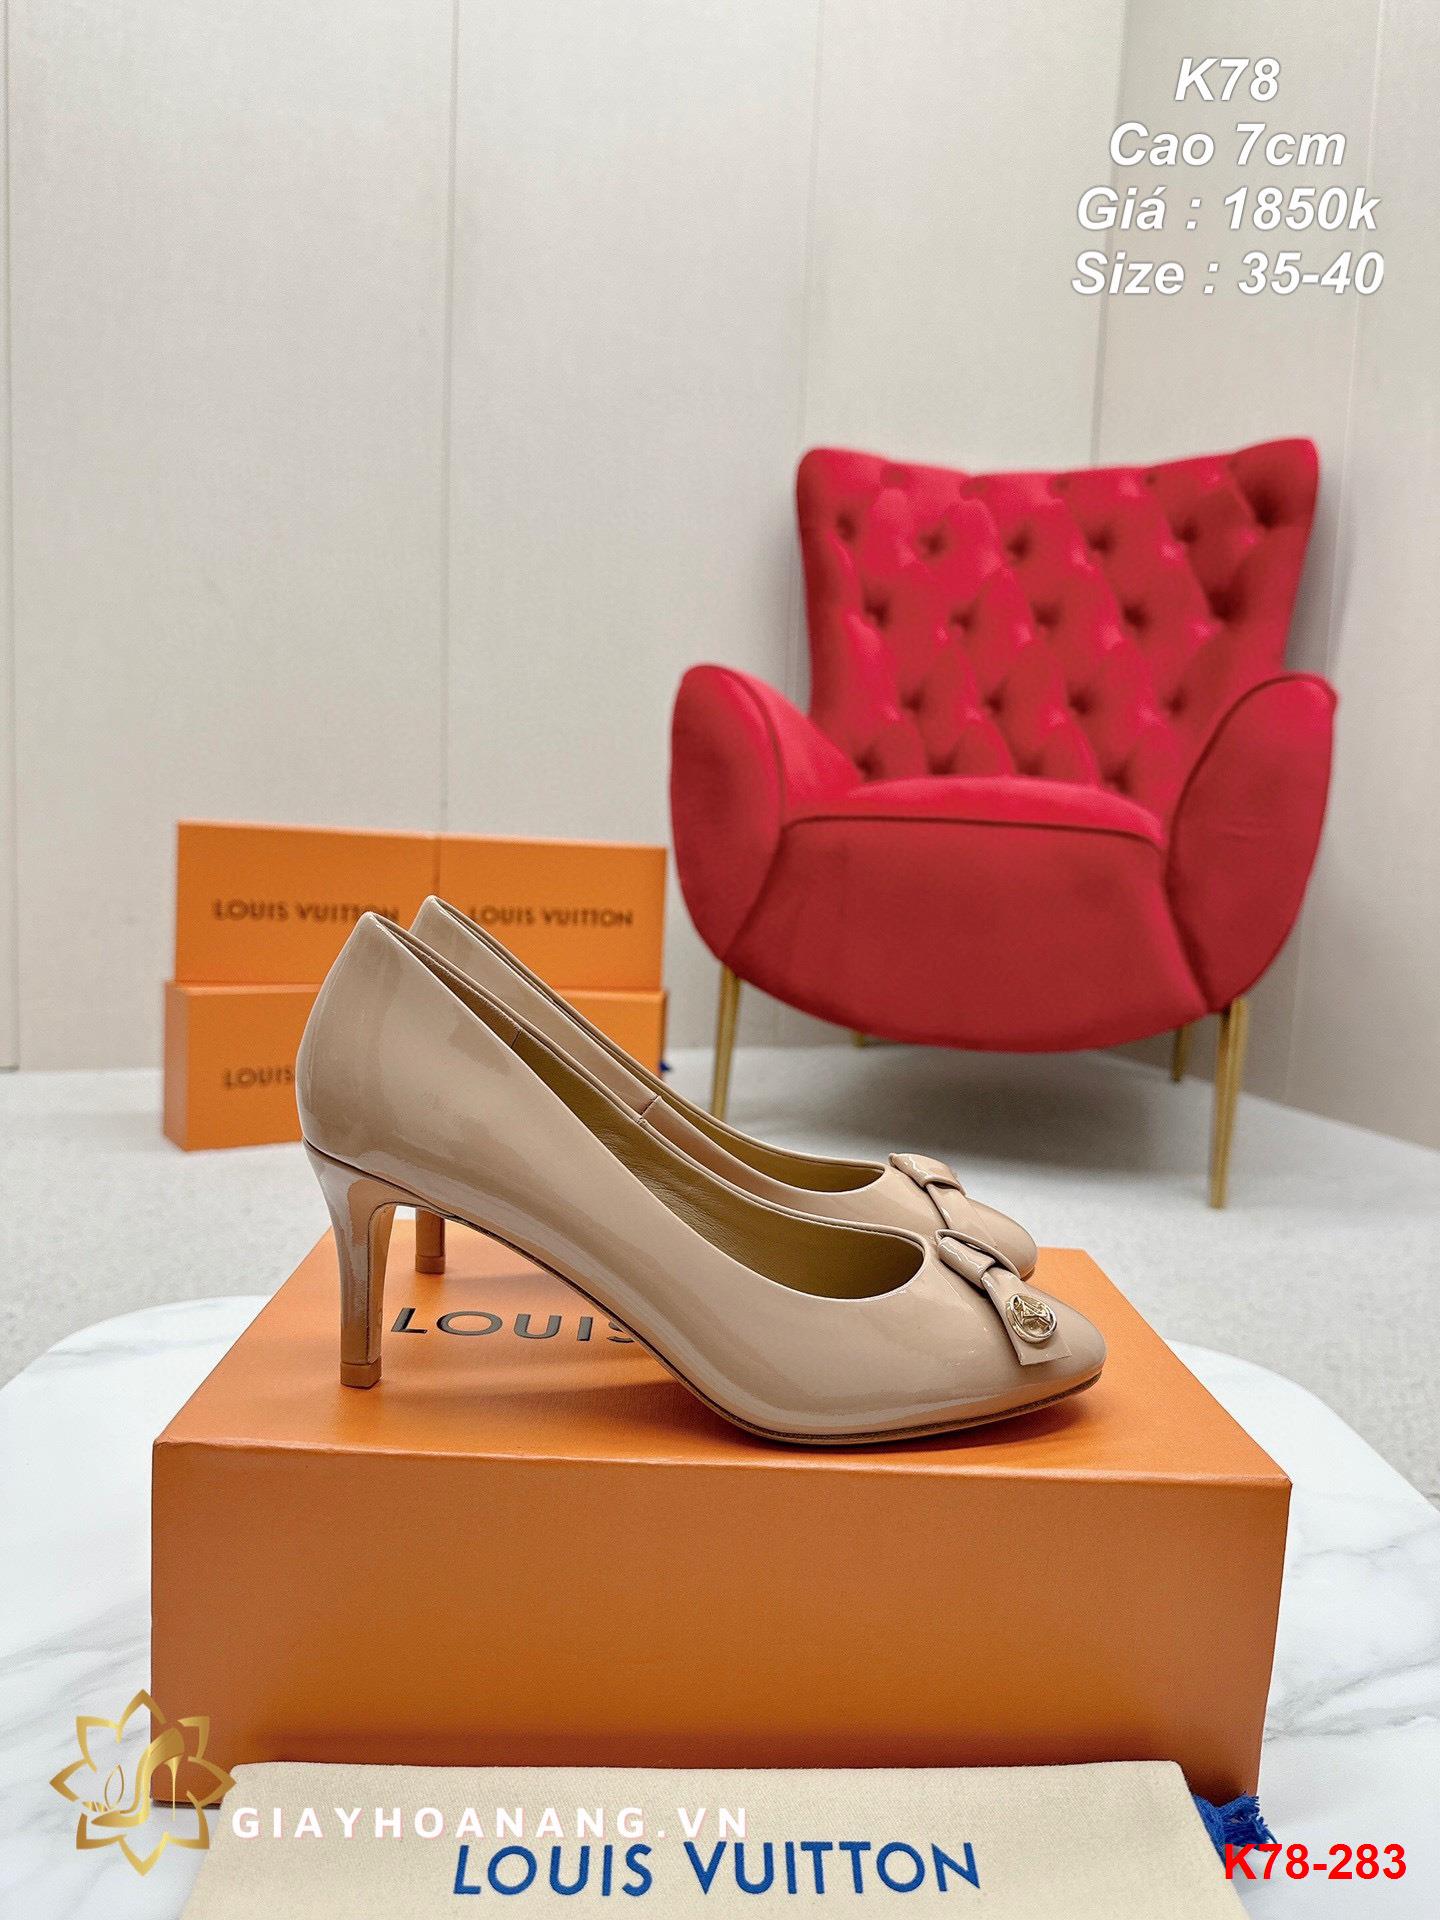 K78-283 Louis Vuitton giày cao 7cm siêu cấp